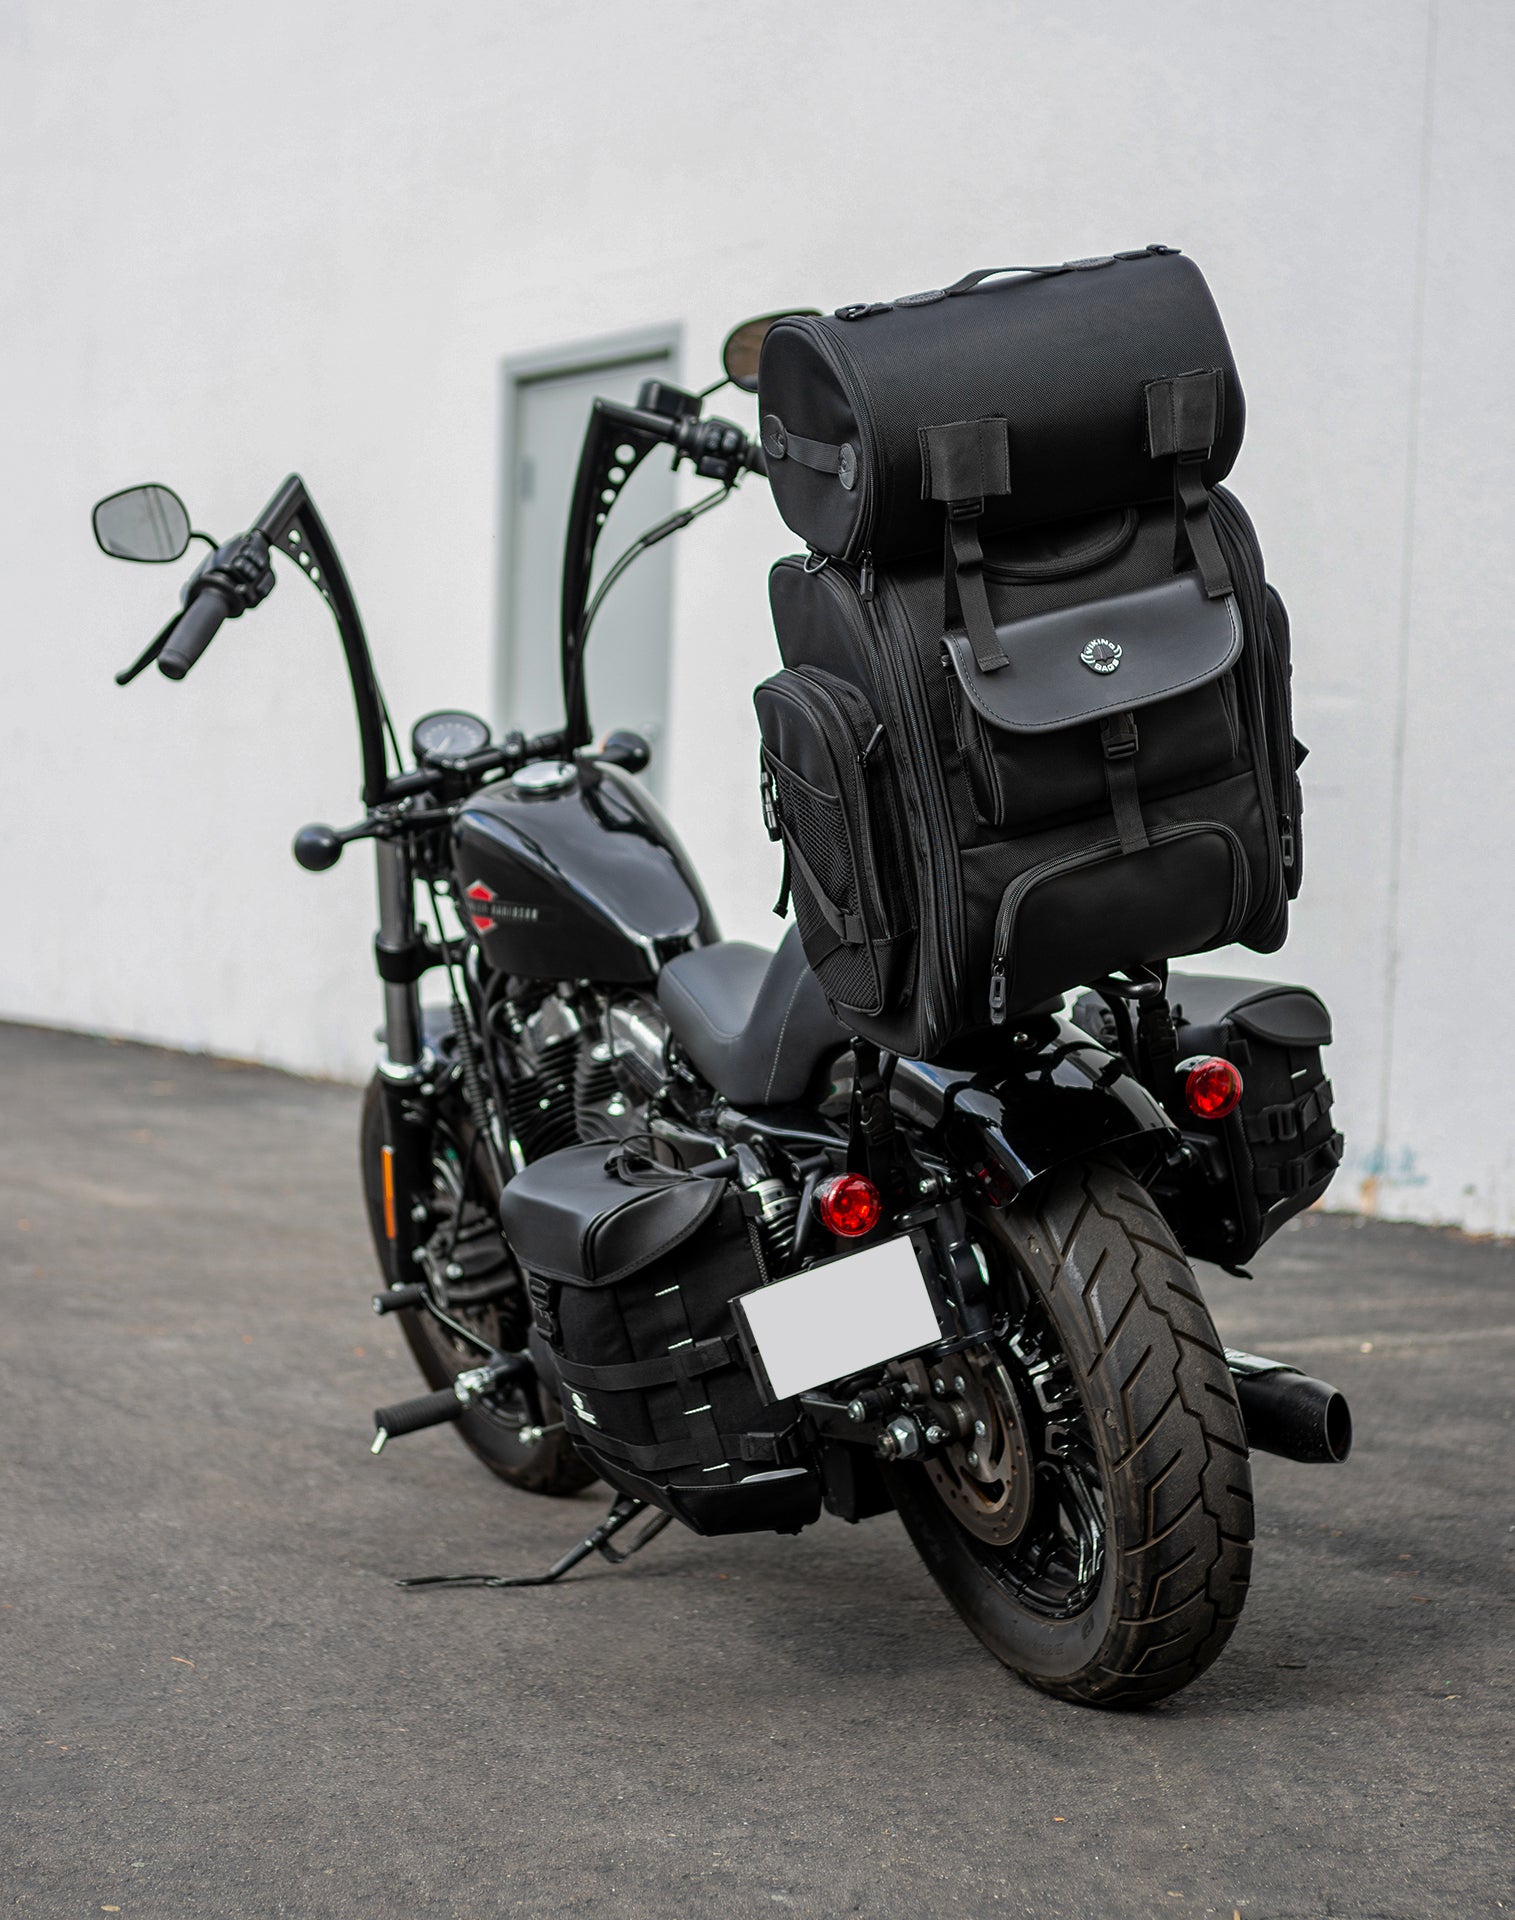 52L - Dwarf XL Honda Motorcycle Sissy Bar Bag